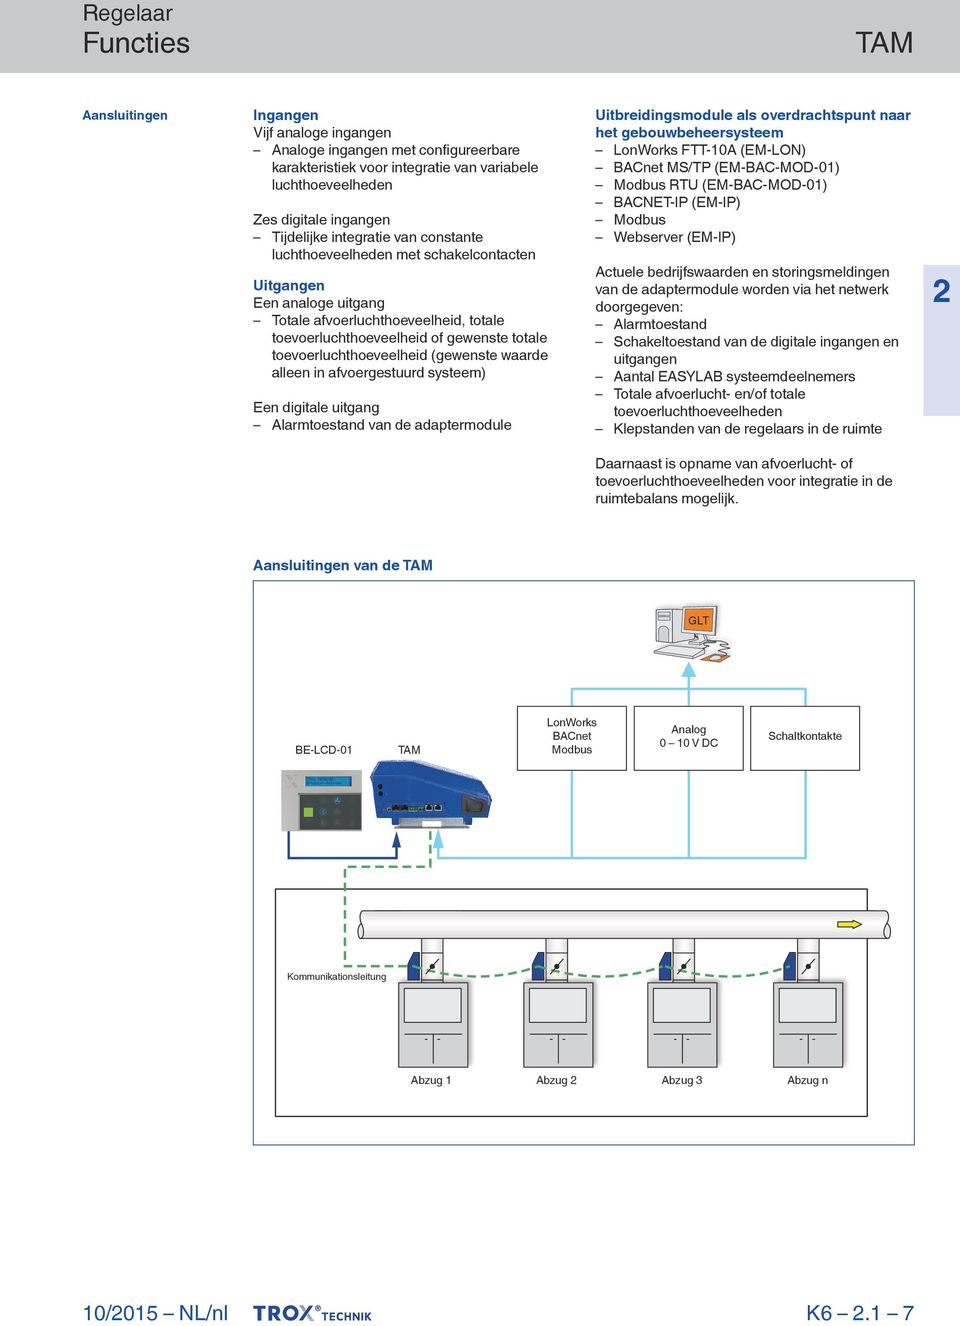 waarde alleen in afvoergestuurd systeem) Een digitale uitgang Alarmtoestand van de adaptermodule Uitbreidingsmodule als overdrachtspunt naar het gebouwbeheersysteem LonWorks FTT-10A (EM-LON) BACnet